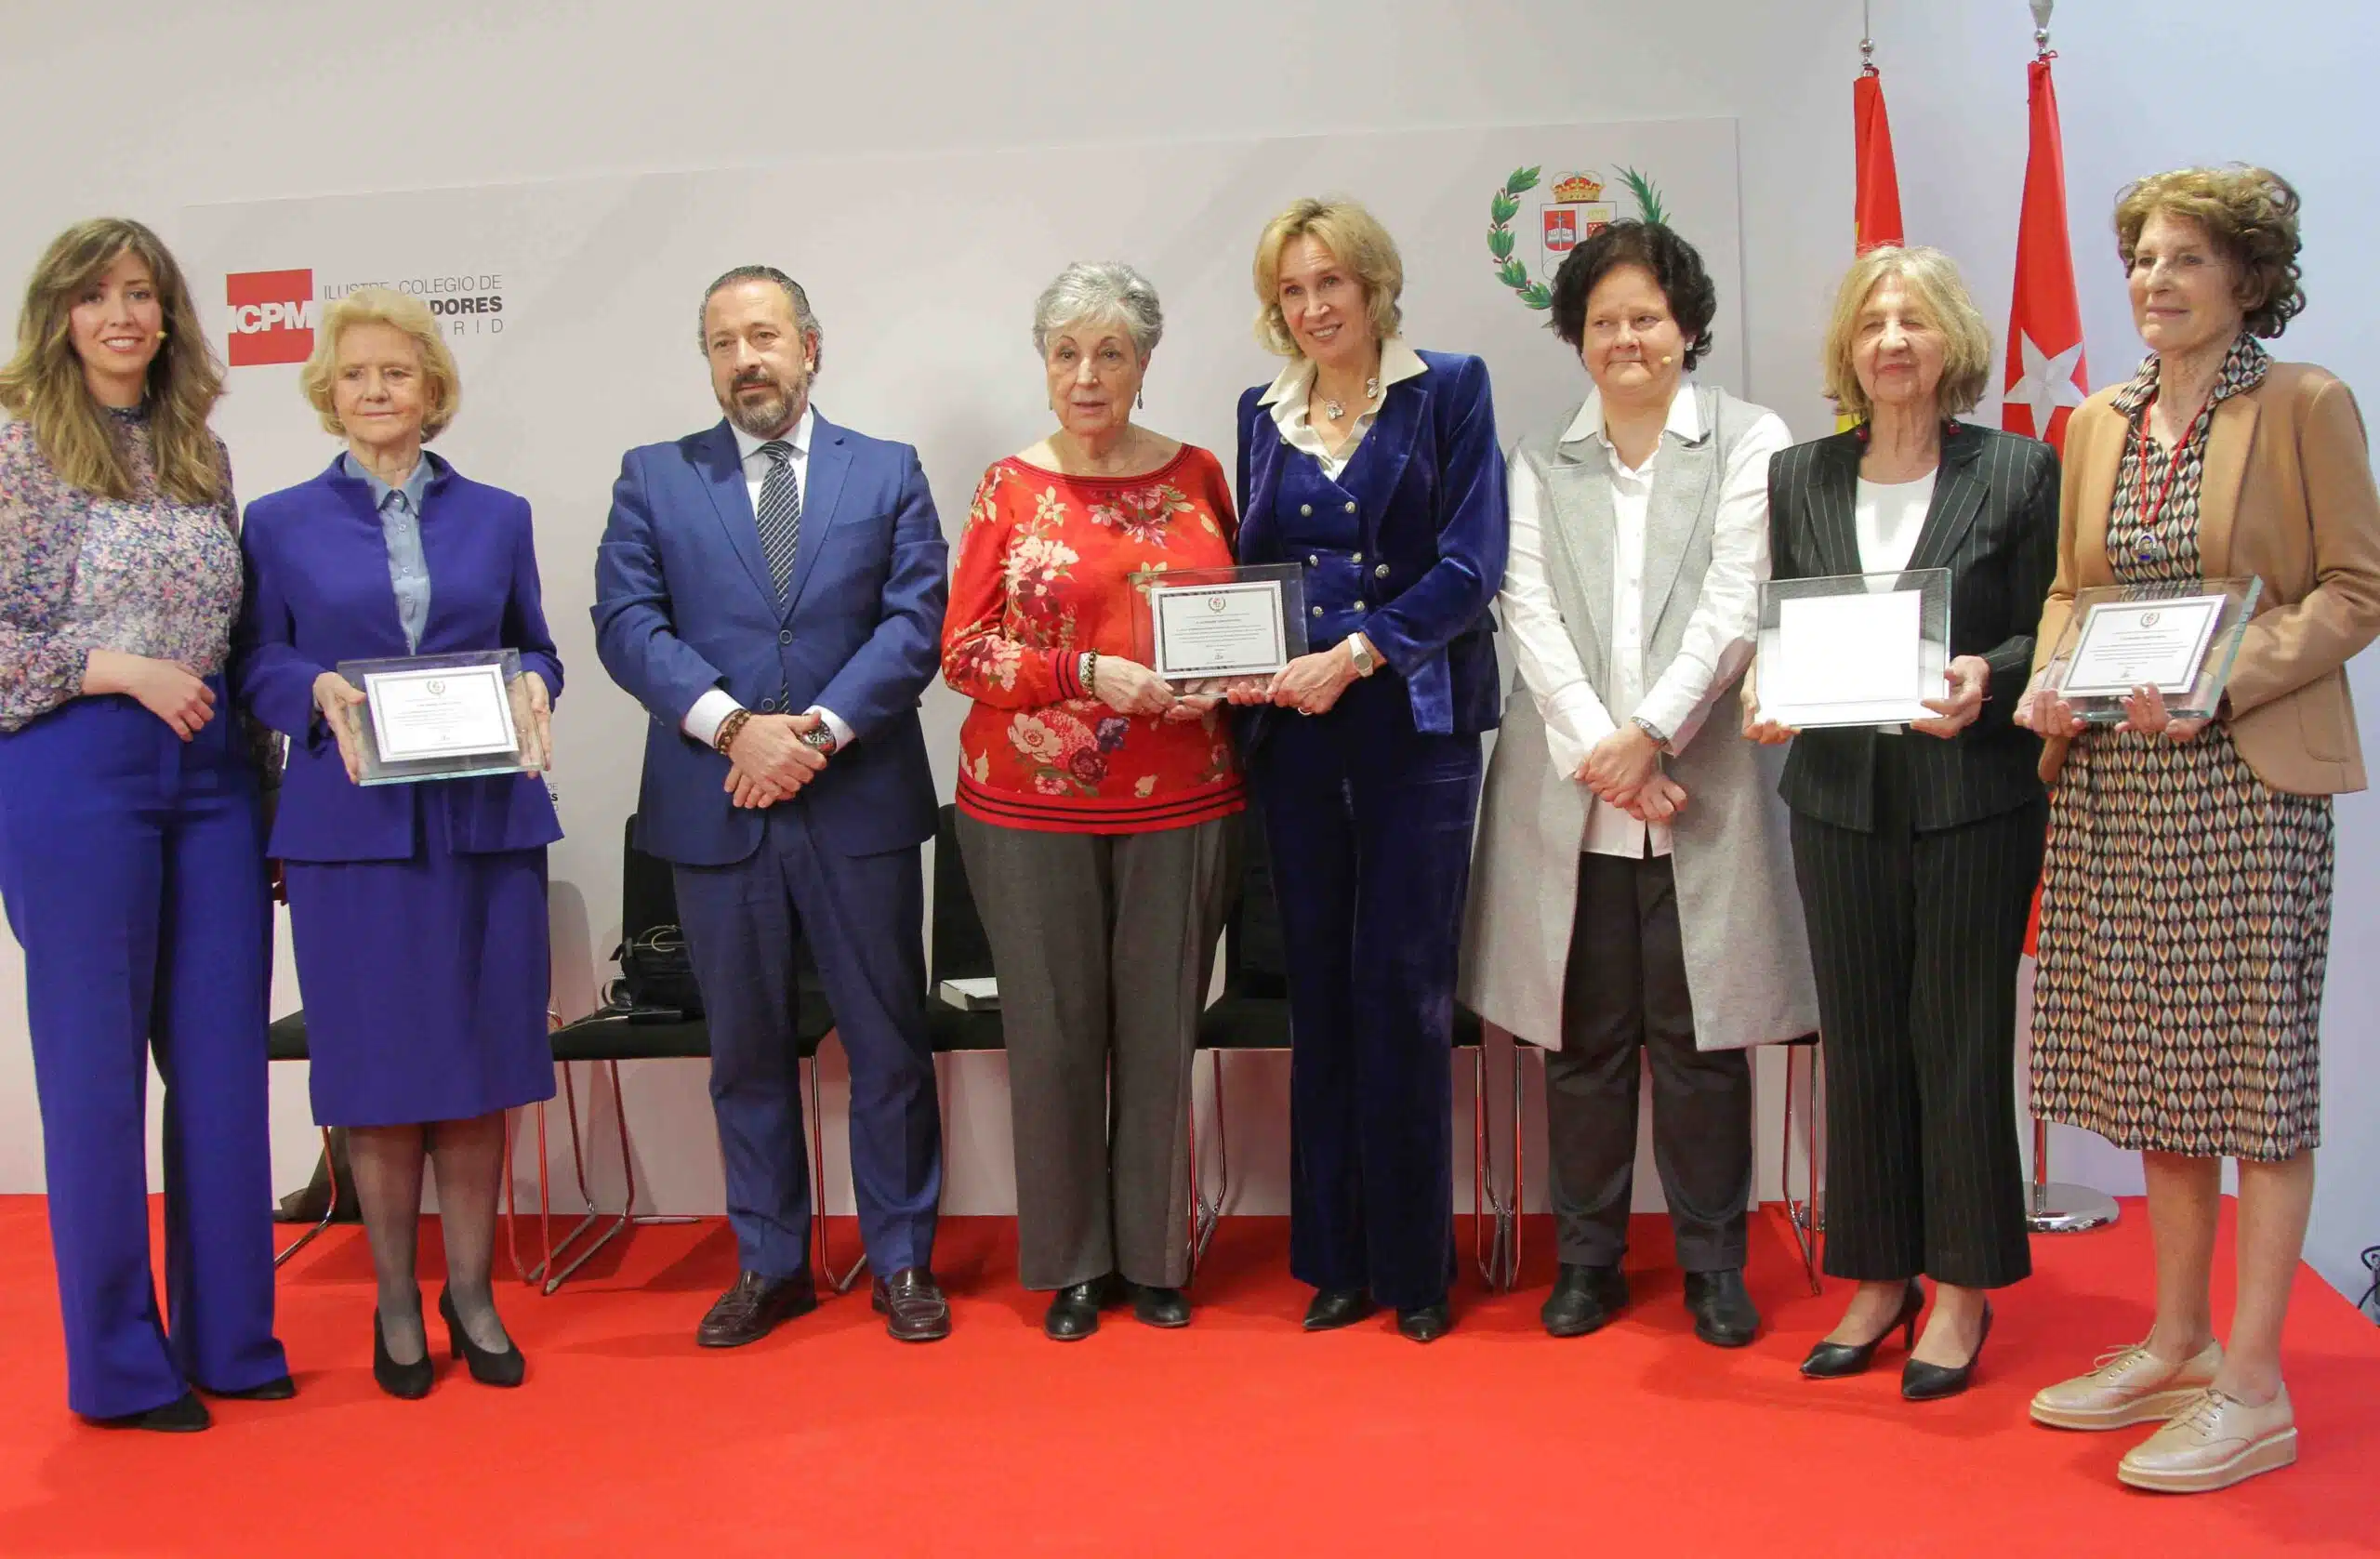 Los procuradores madrileños reconocen a las 27 mujeres que participaron en la Legislatura Constituyente 1977-1979